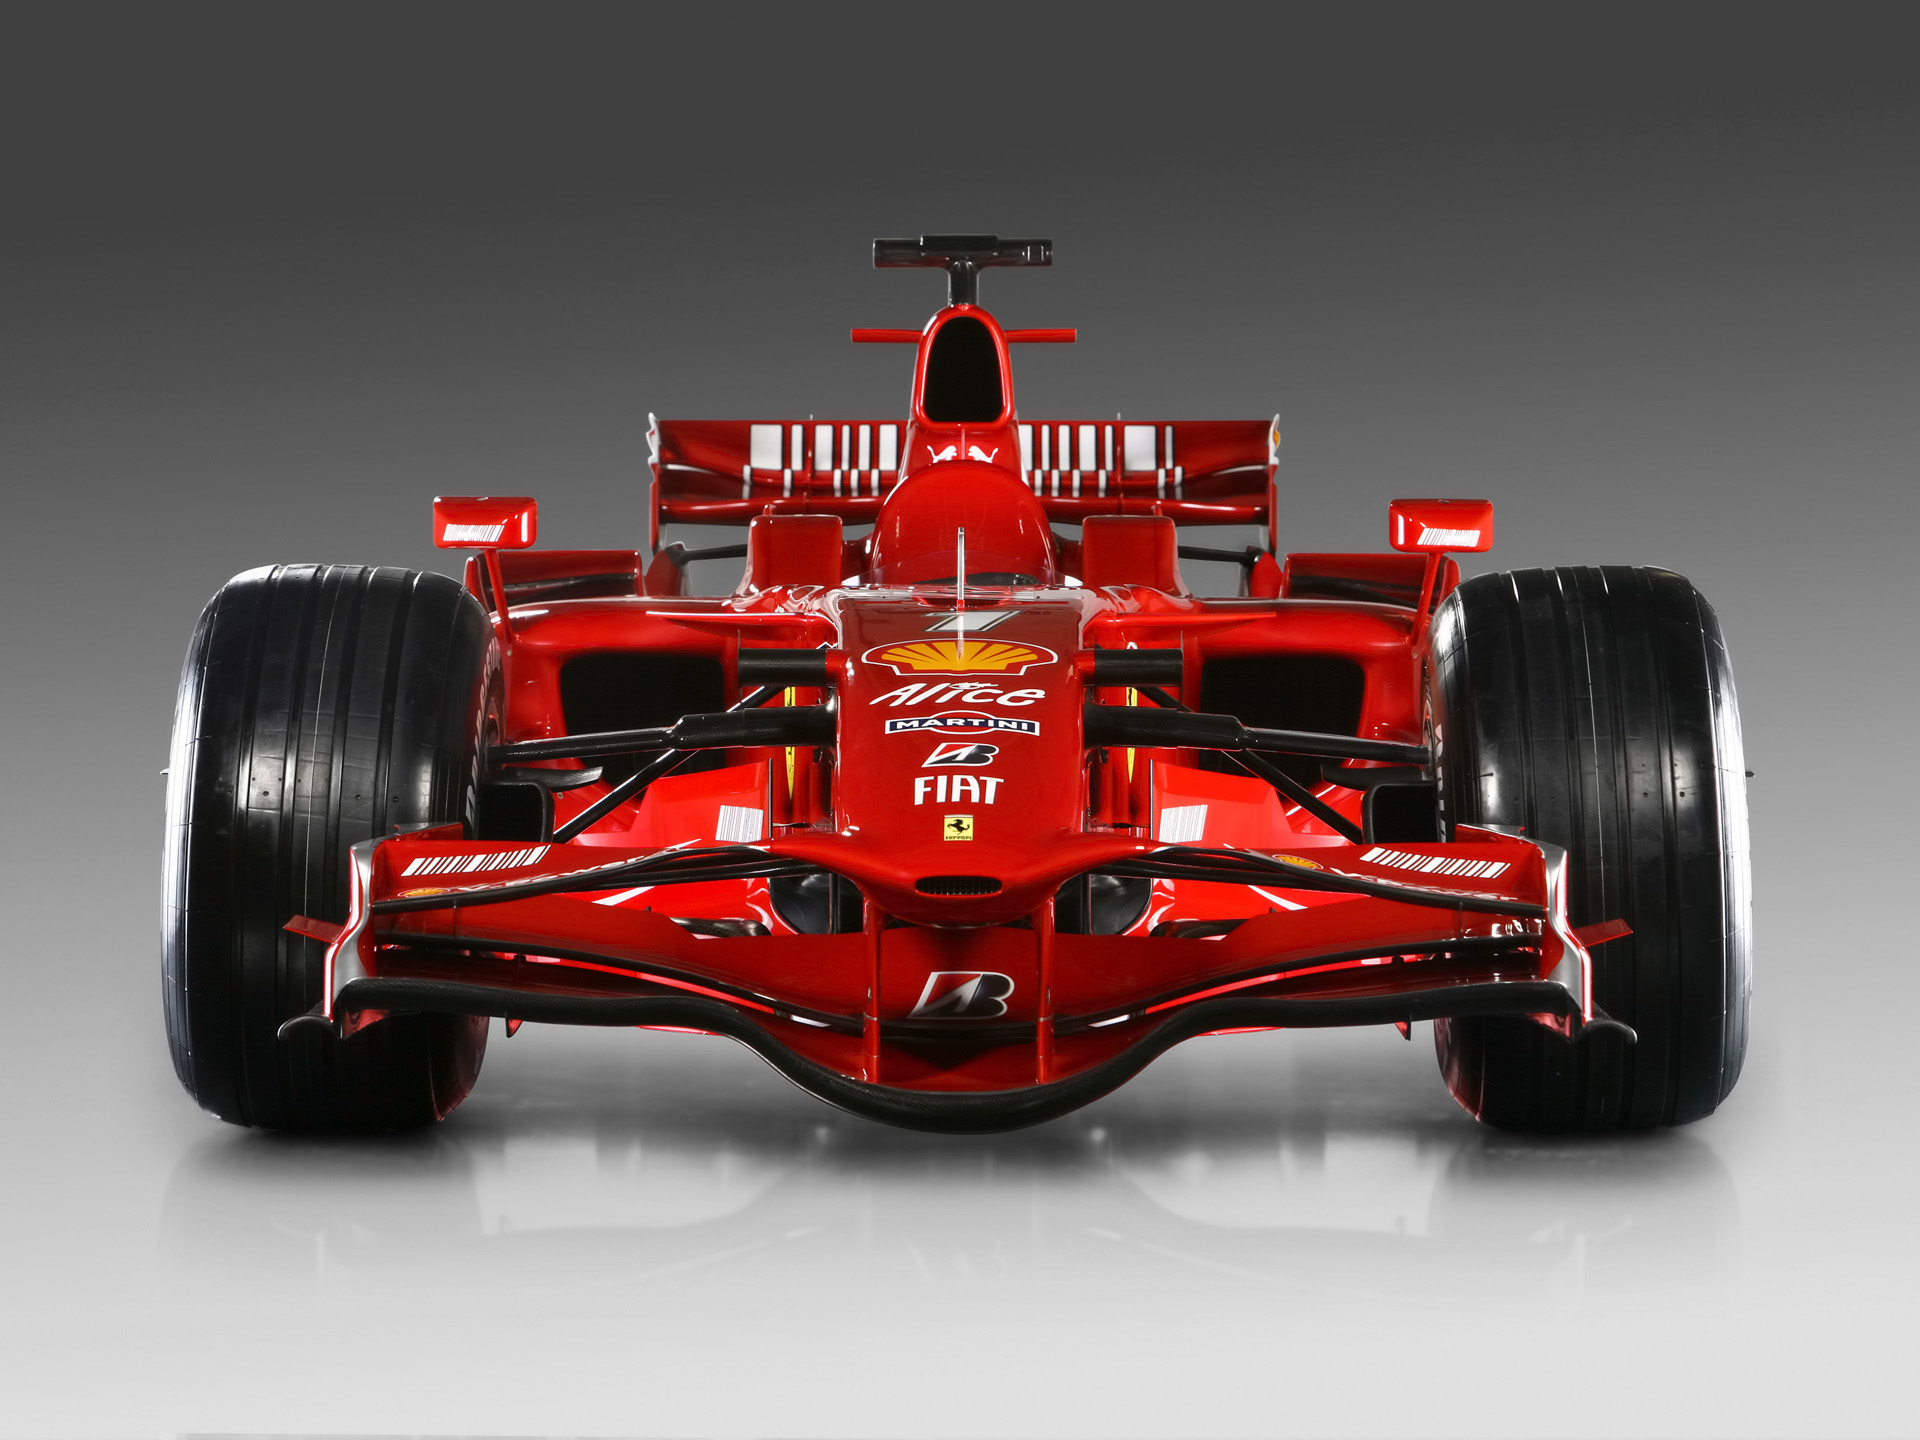 Ferrari F1 Car 2017 , HD Wallpaper & Backgrounds